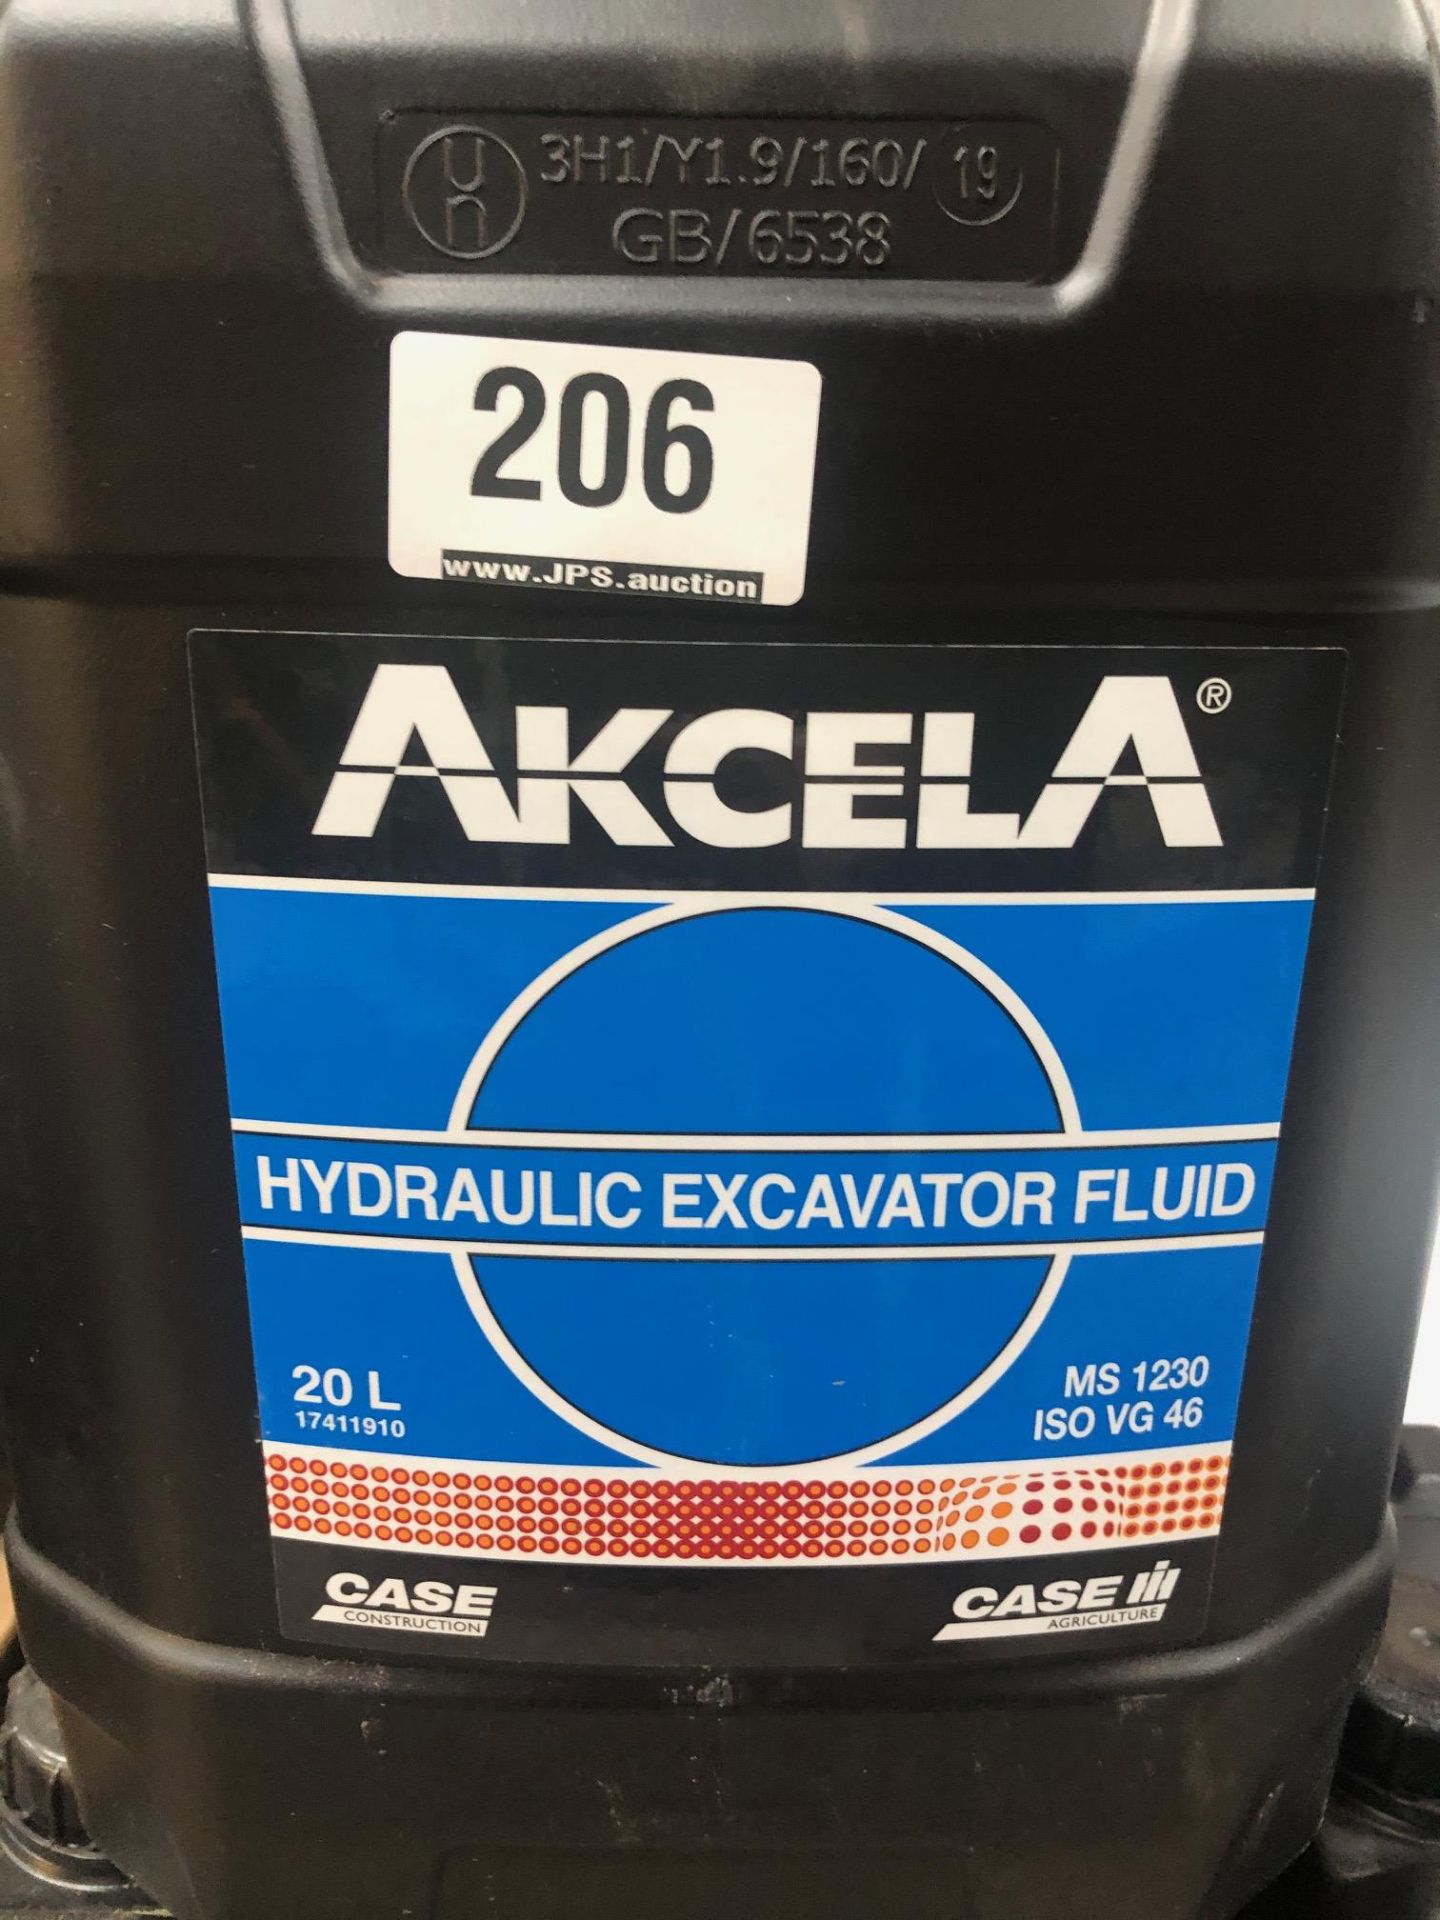 2 x 20L Drums of Akcela MS 1230 Hydraulic Excavator Fluid